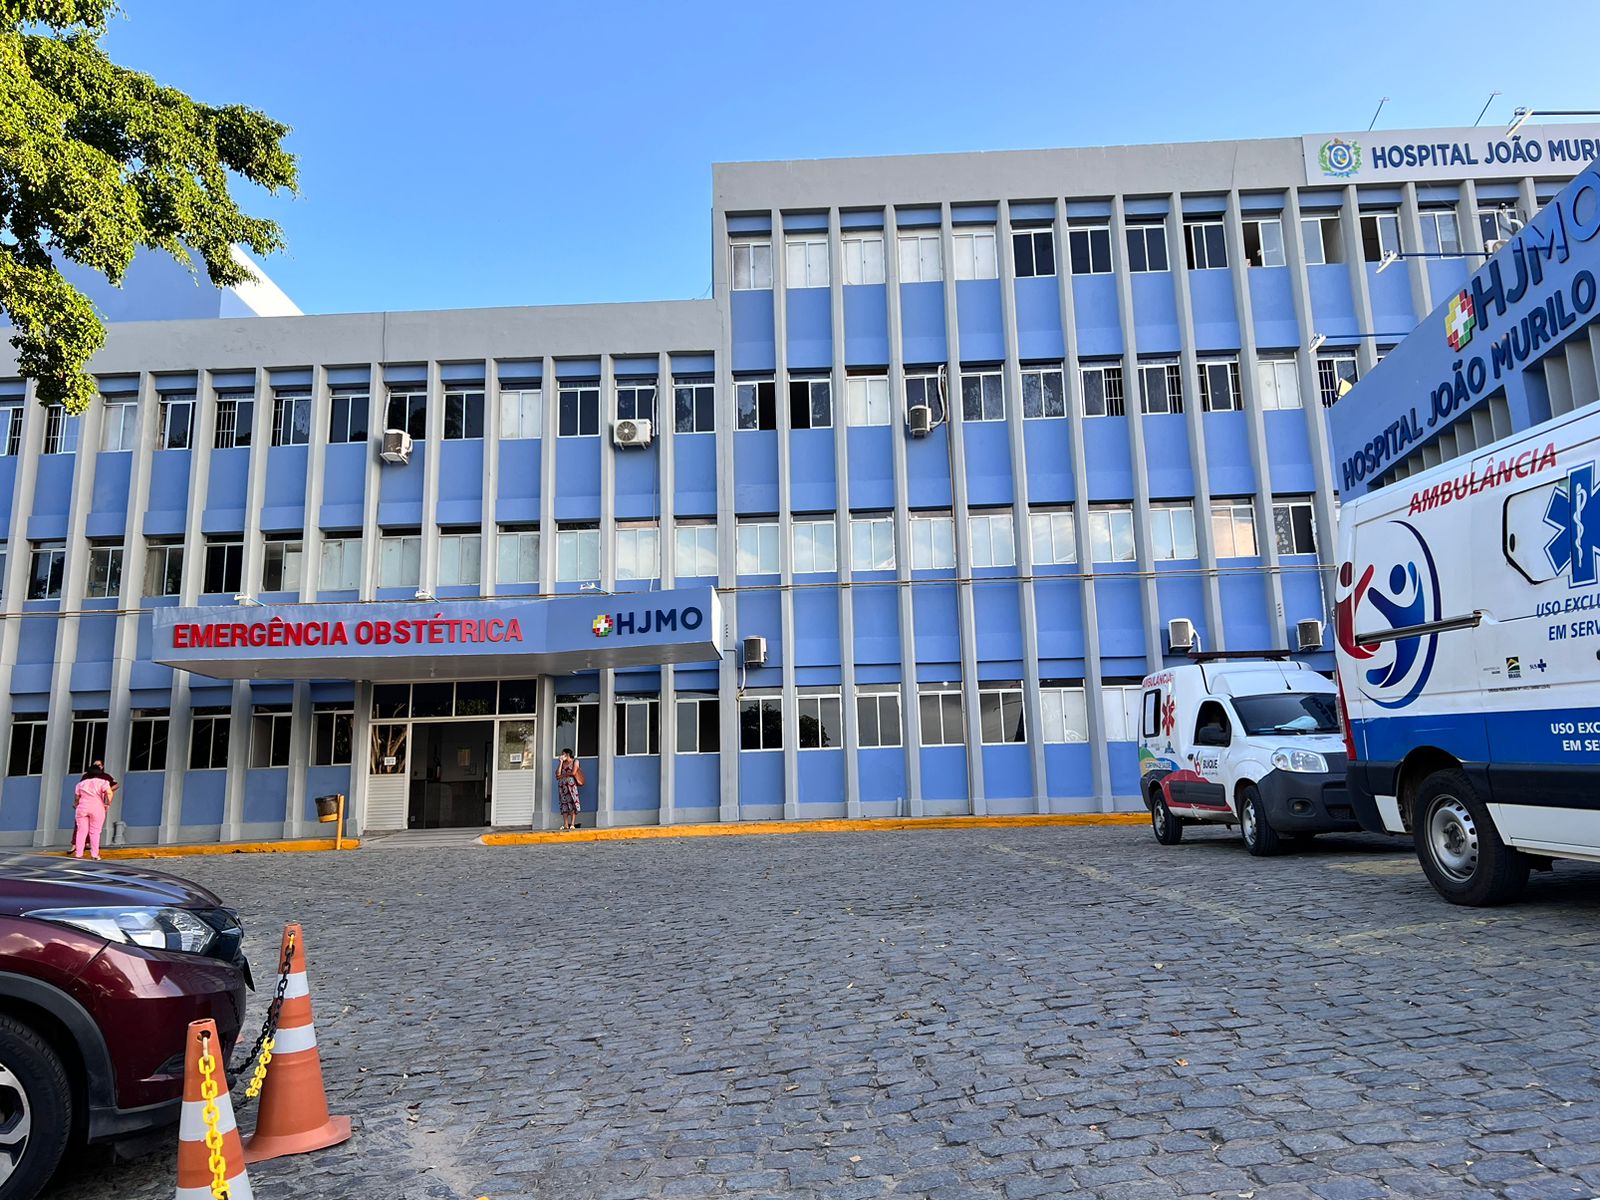 Hospital João Murilo de Oliveira